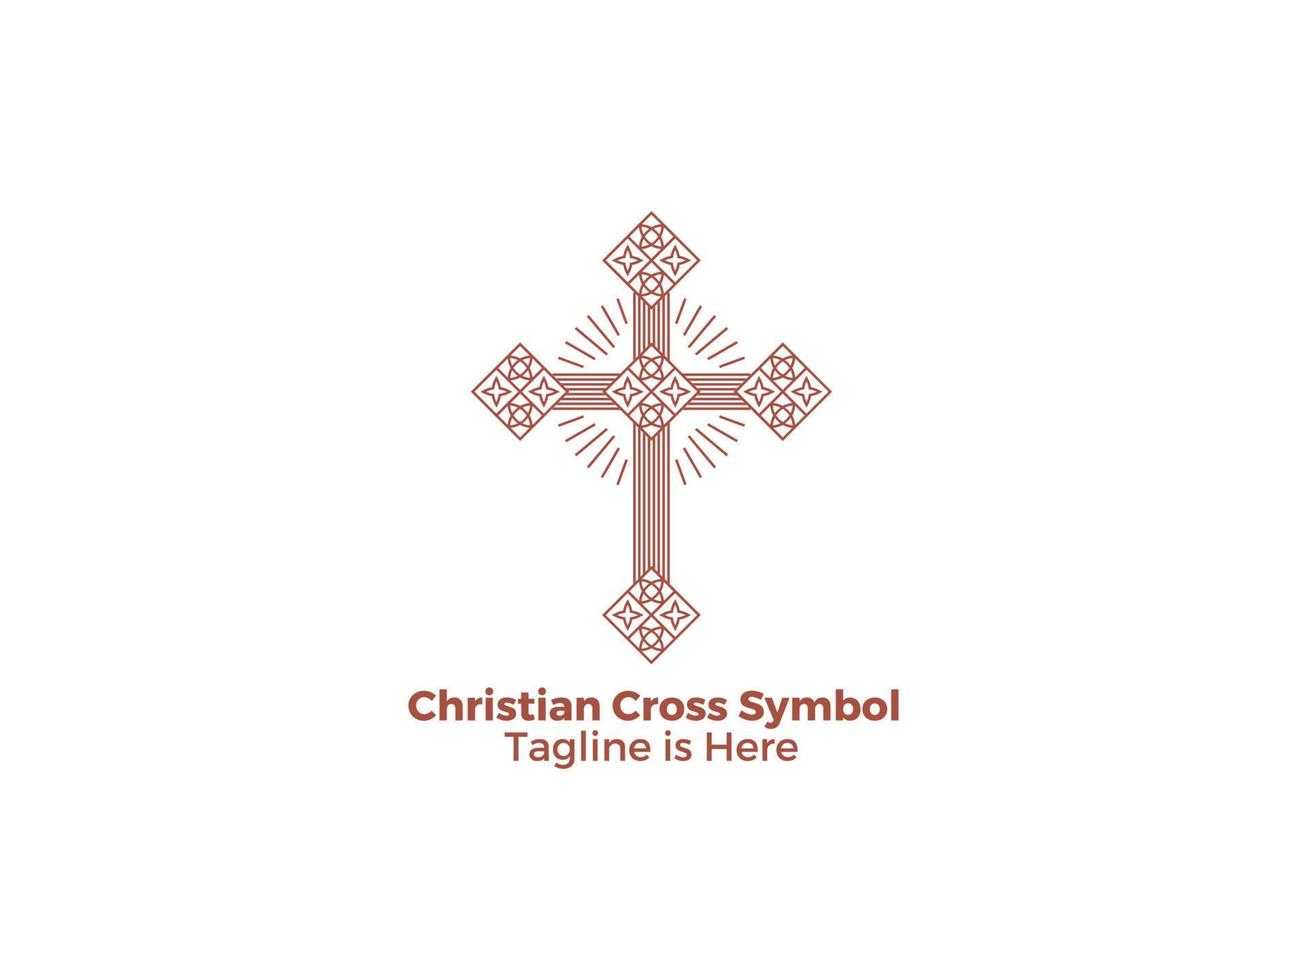 croix symboles chrétiens catholicisme religion paix jésus vecteur gratuit